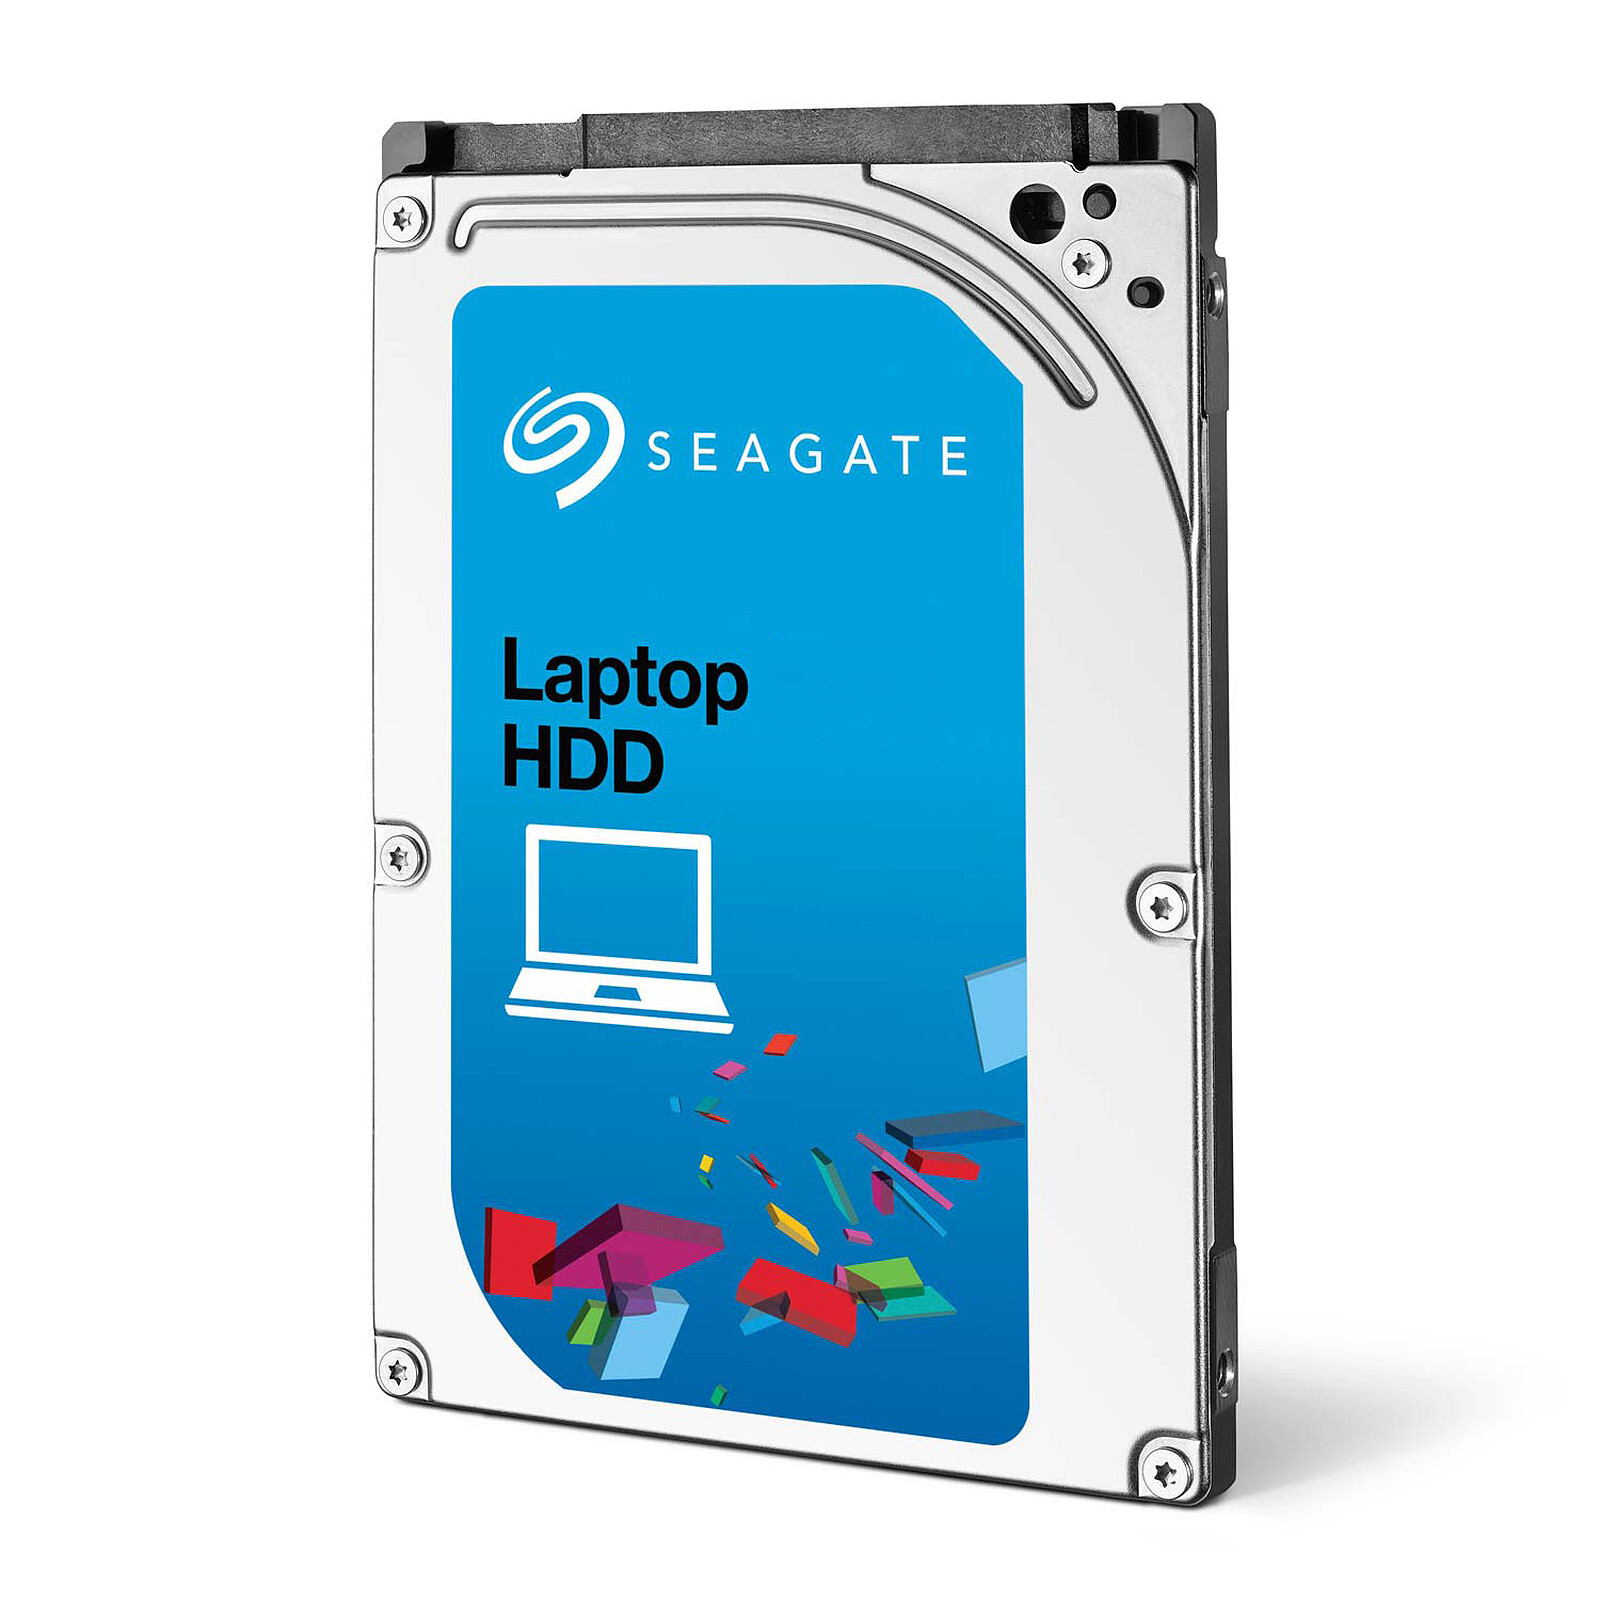 LS Seagate-Disque dur interne pour ordinateur portable, 320 Go